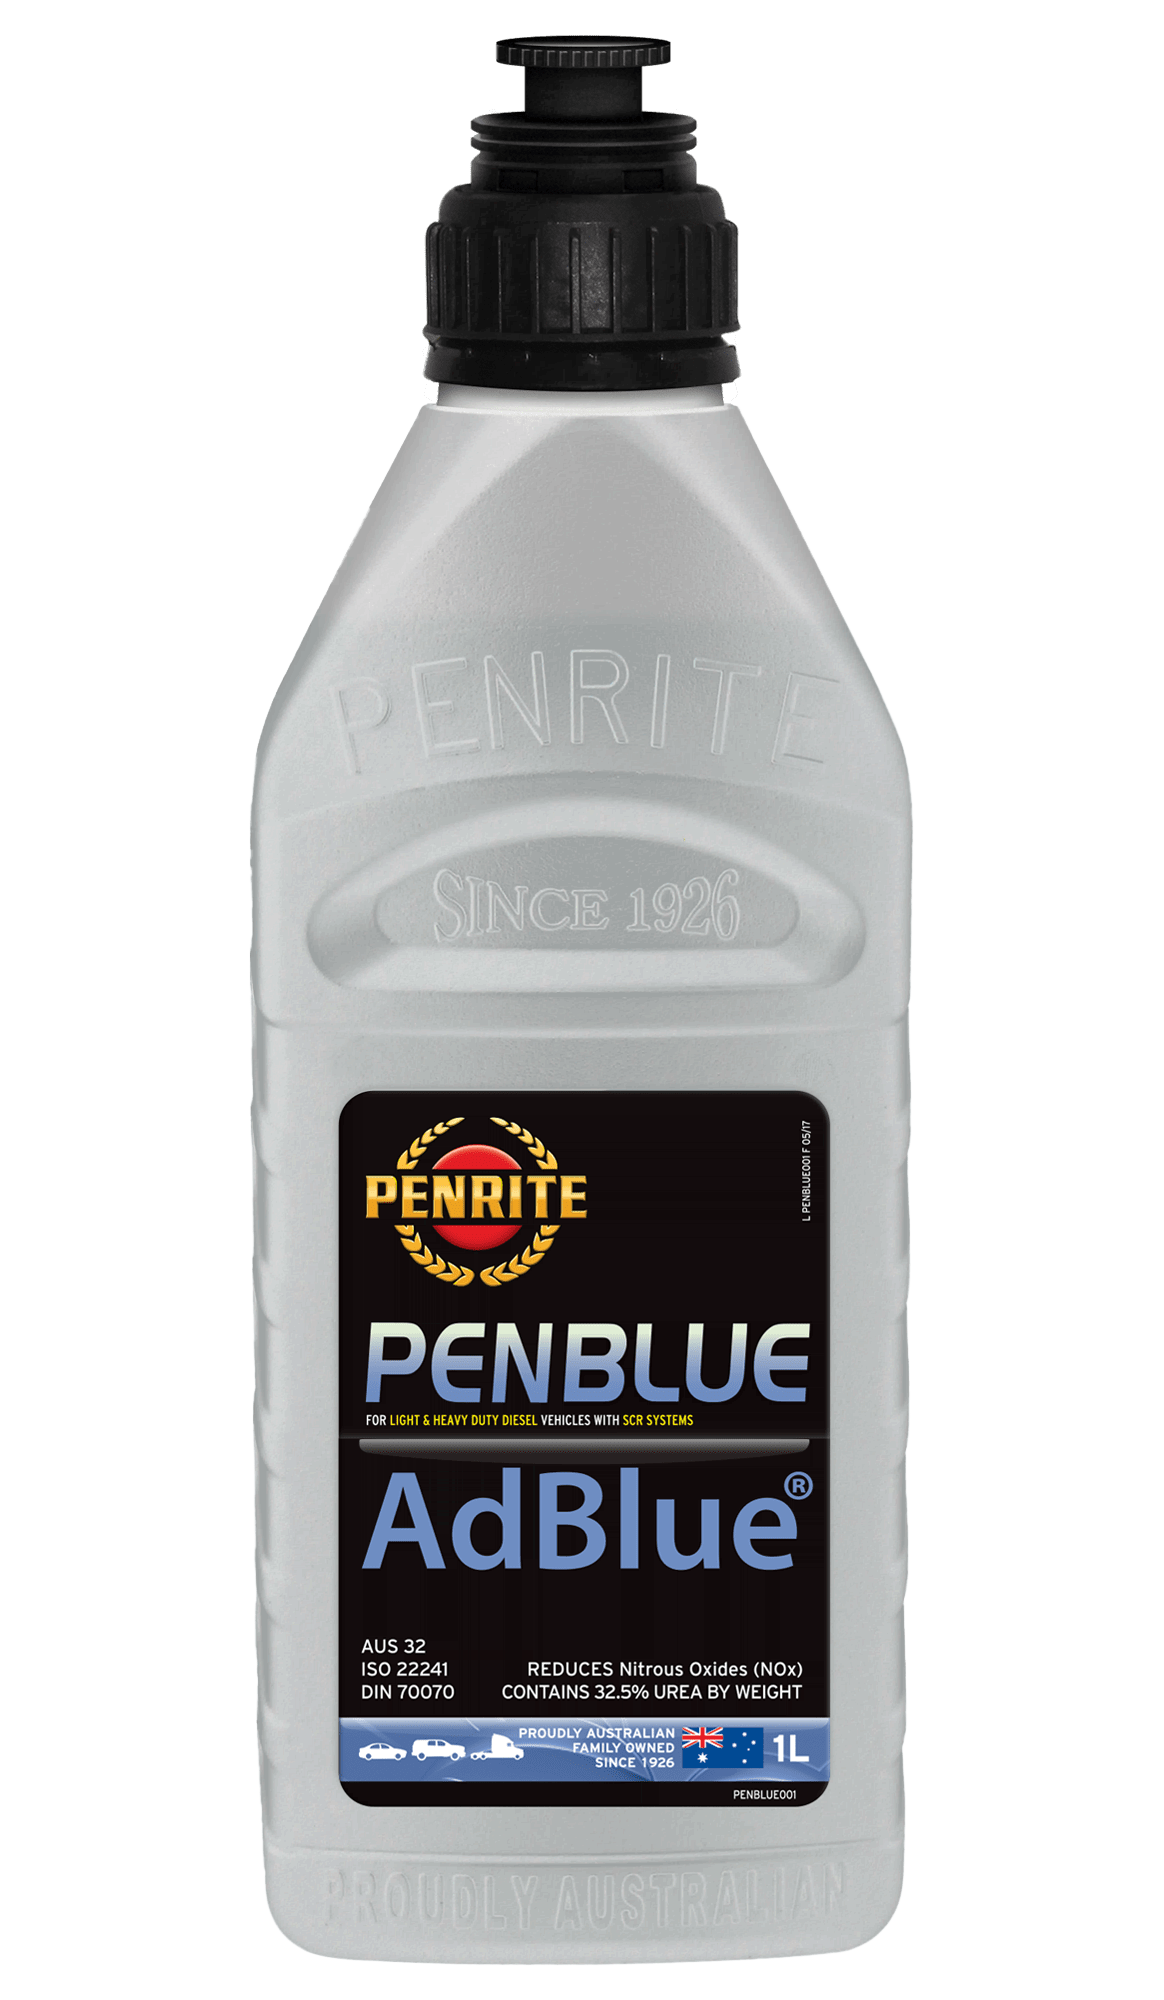 PENBLUE (ADBLUE) DEF Diesel Exhaust Fluid - Penrite – Universal